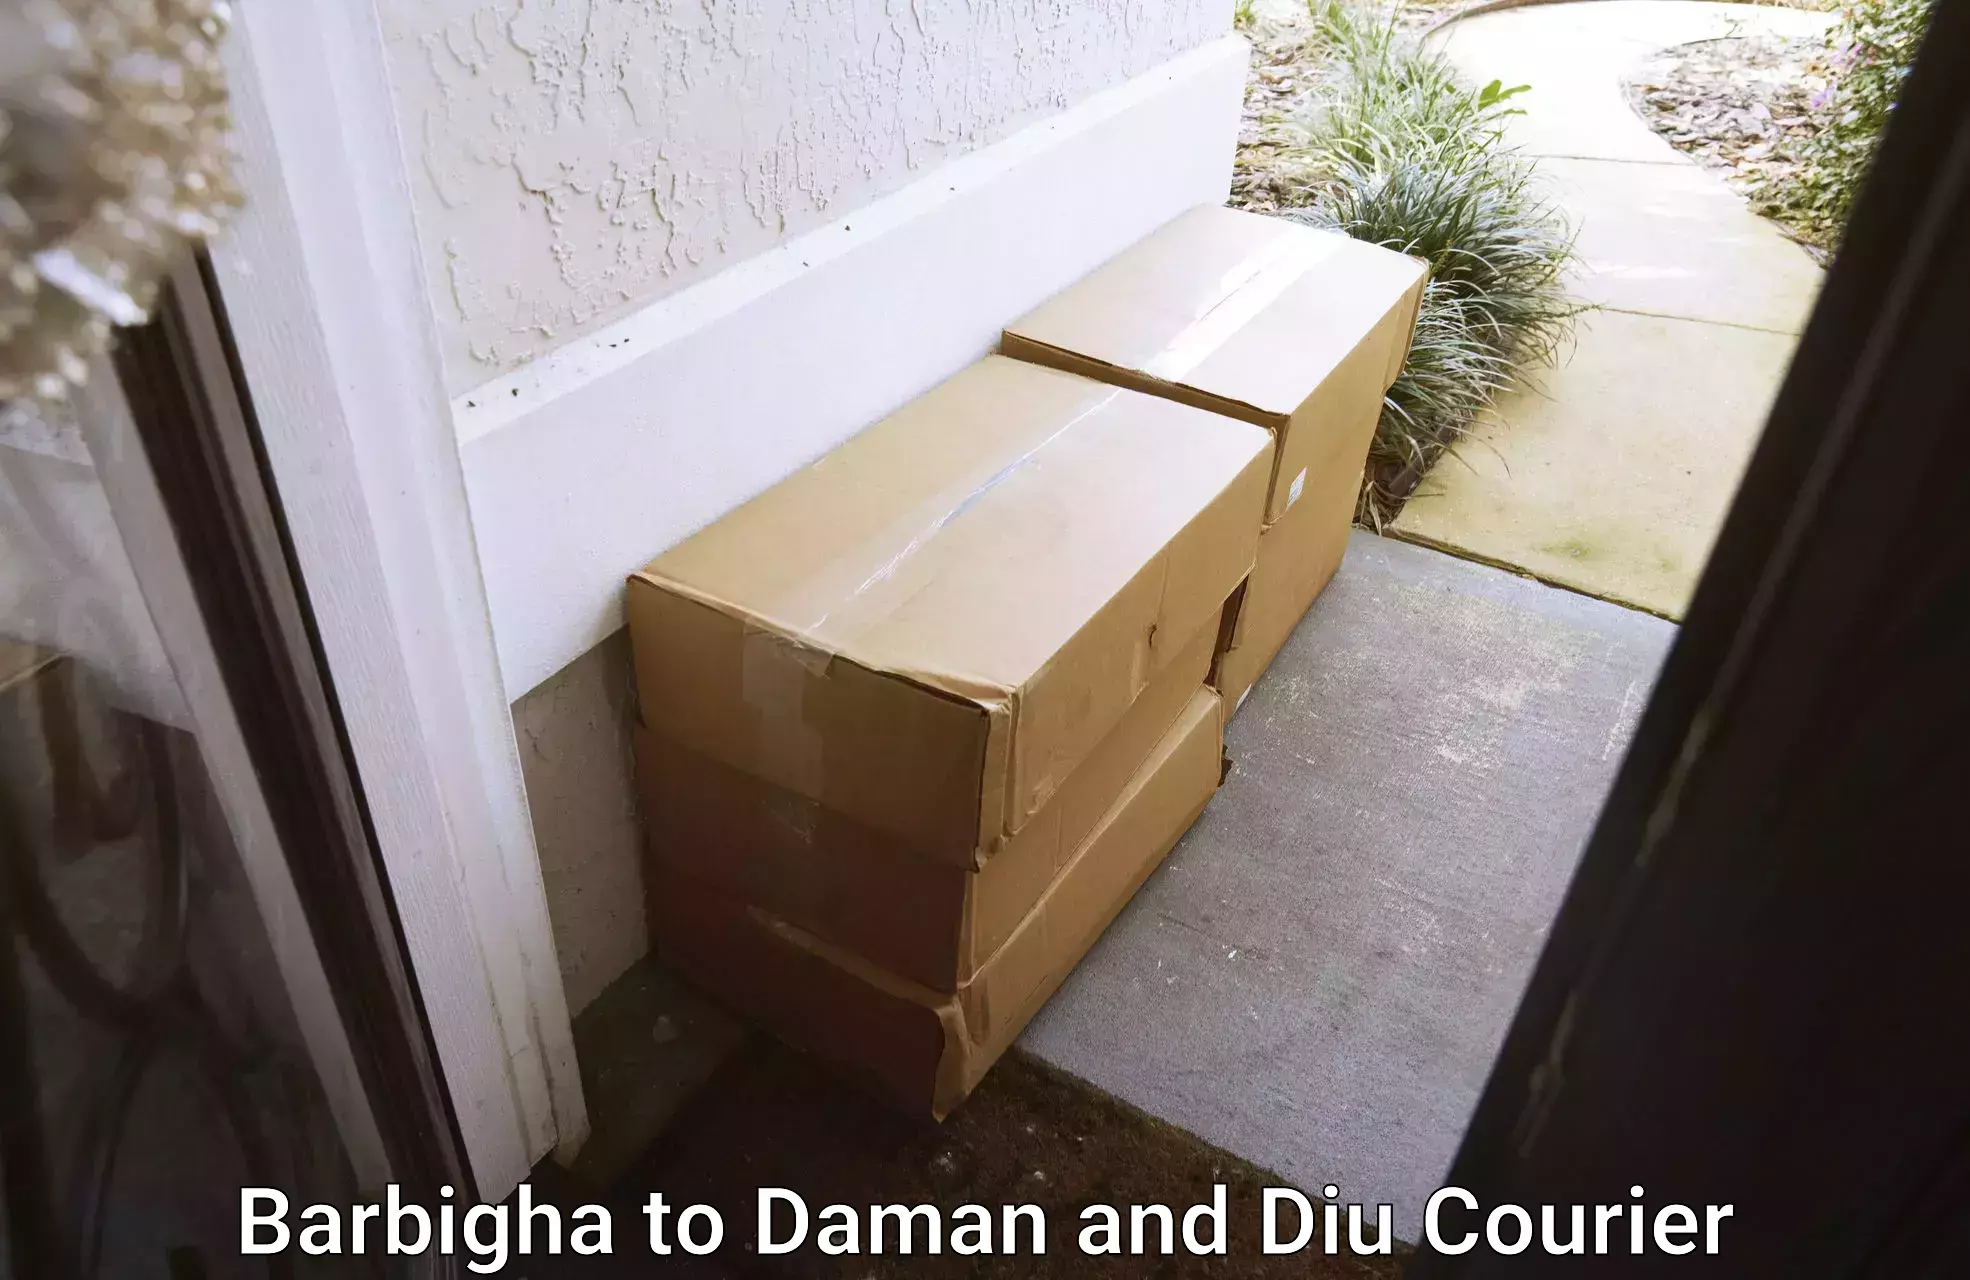 Expert household movers Barbigha to Diu